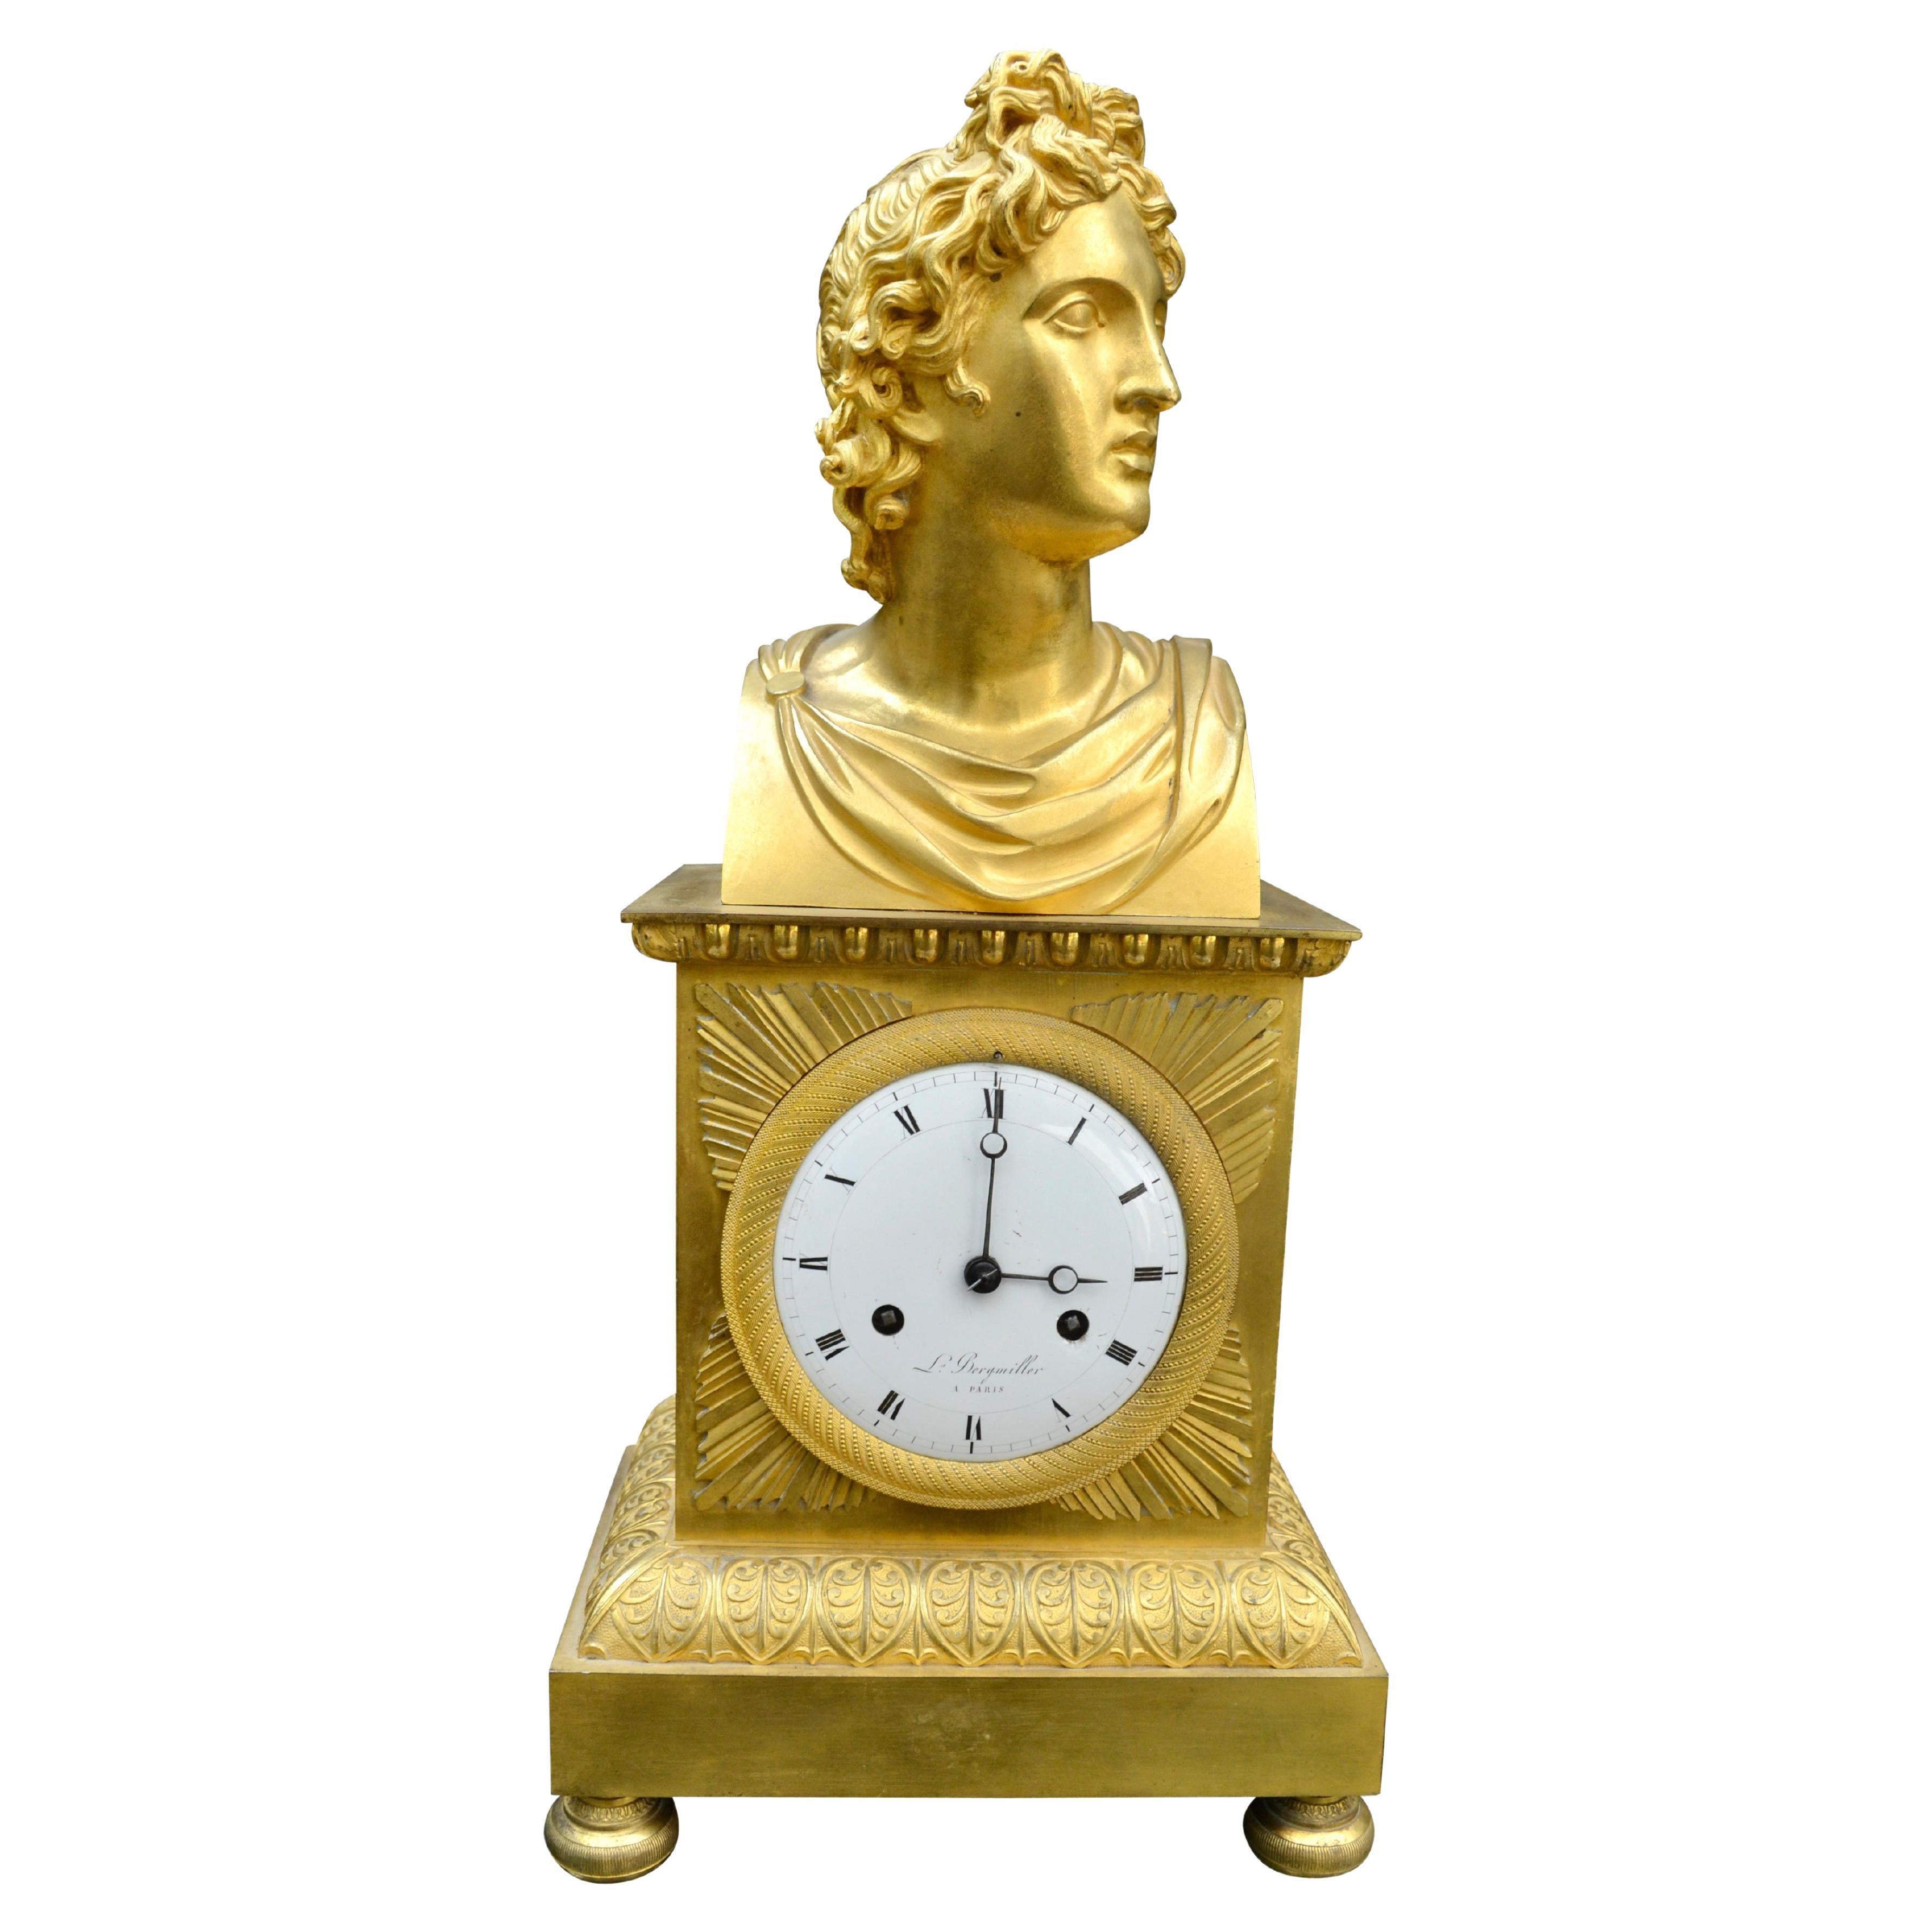 Horloge Empire française en bronze doré avec buste d'Apollon Belvédère